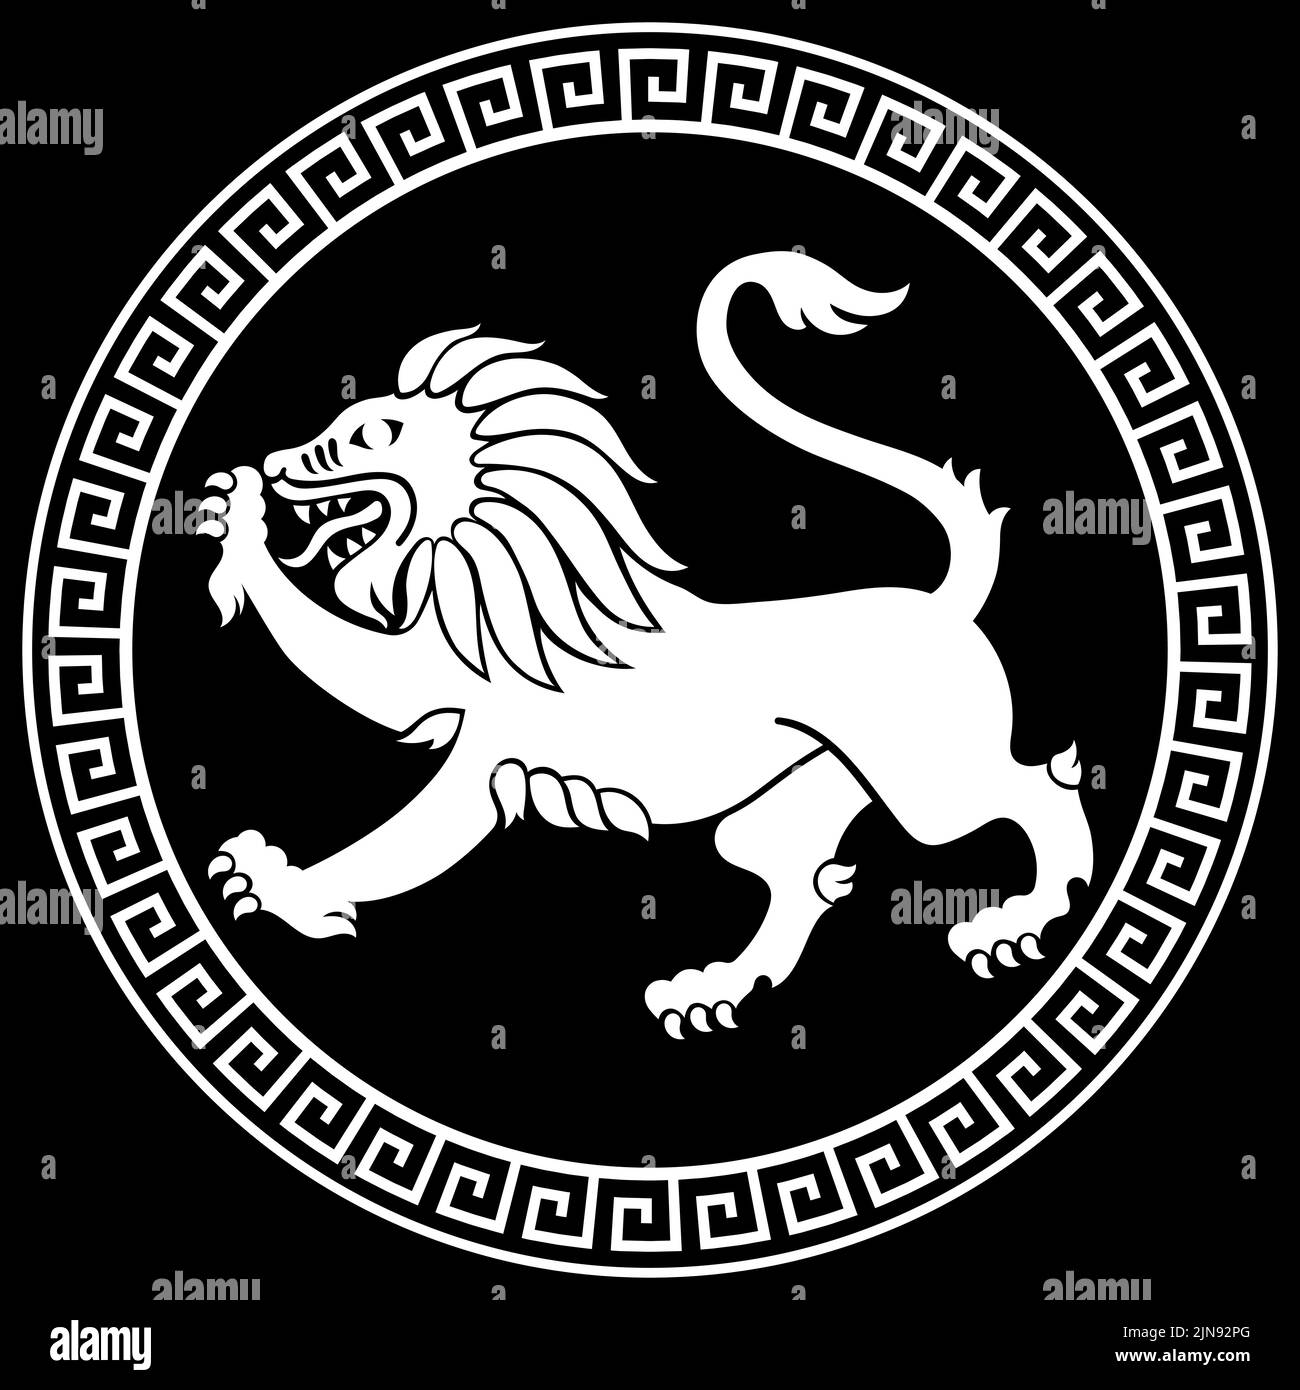 Design grec ancien.L'image d'un lion dans le style grec ancien sur le bouclier d'un guerrier Illustration de Vecteur